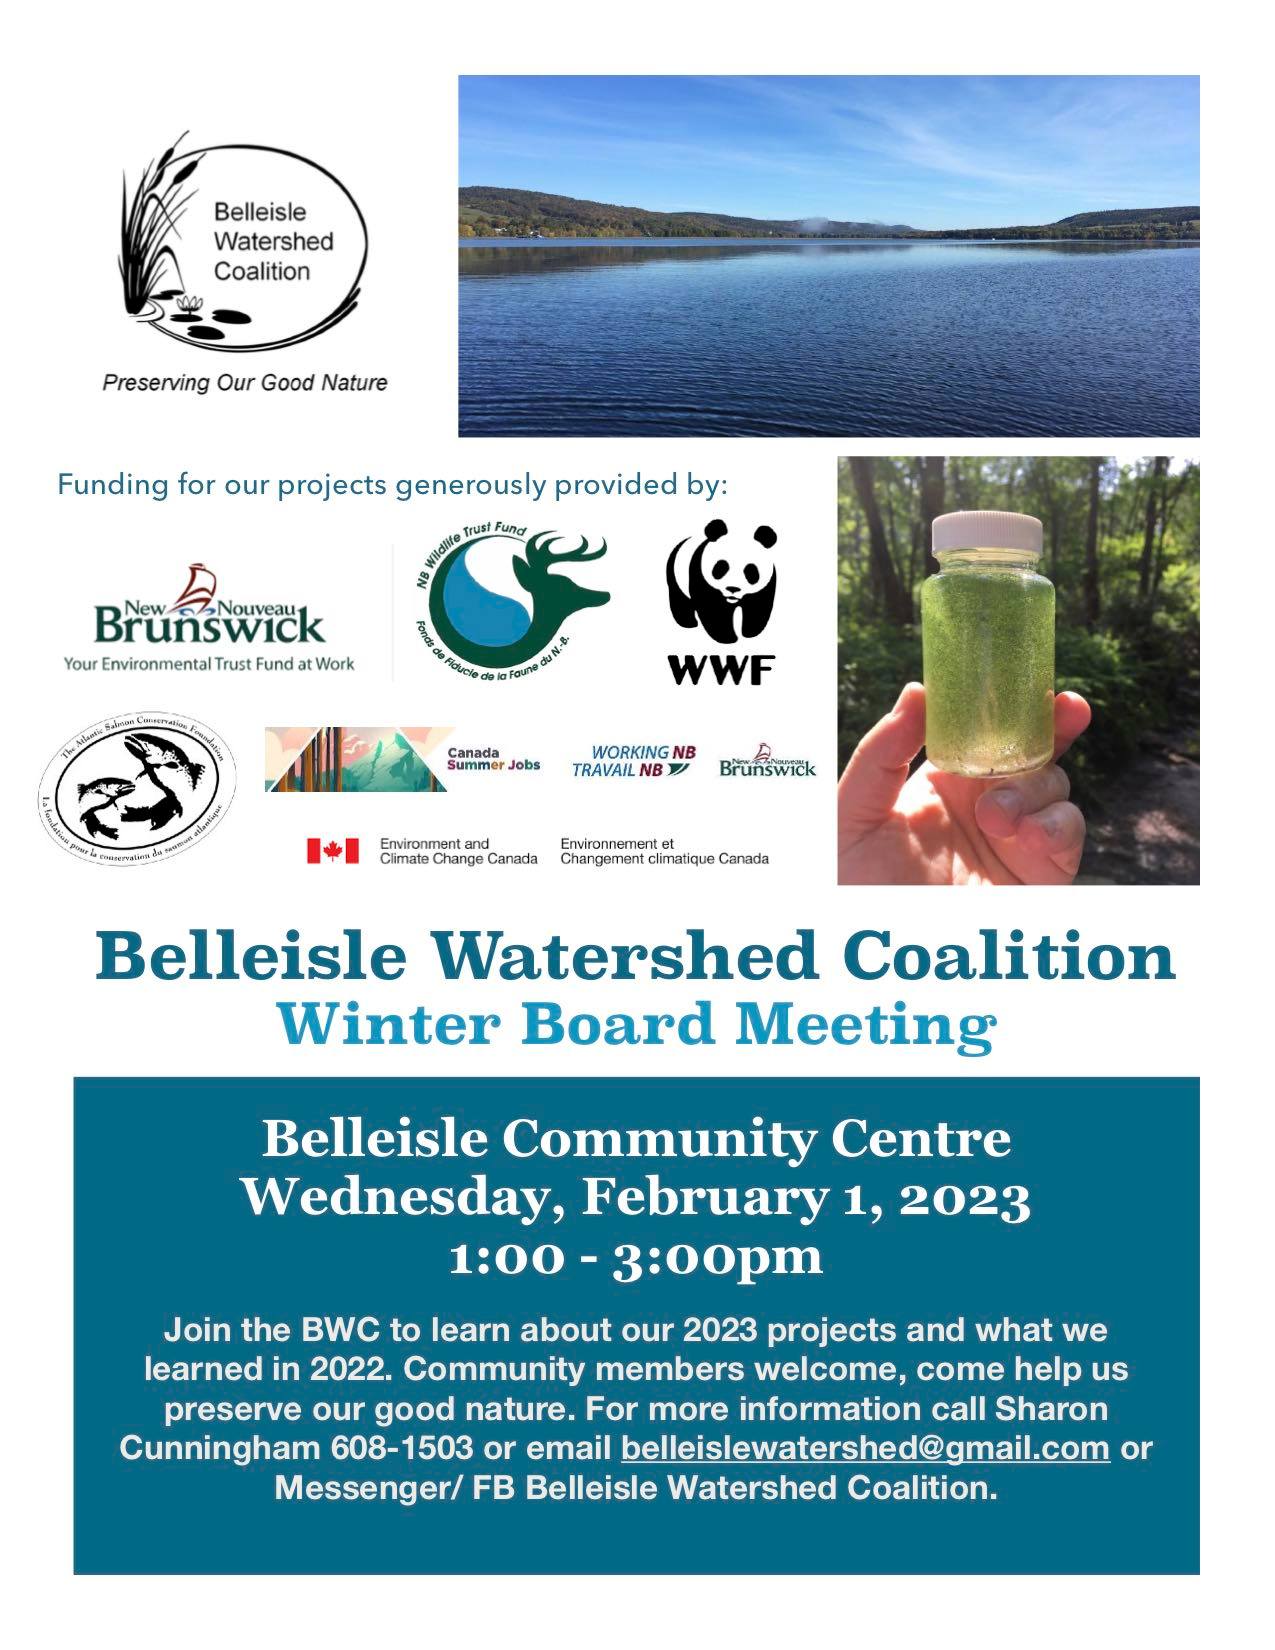 Belleisle Watershed Coalition Winter Board Meeting